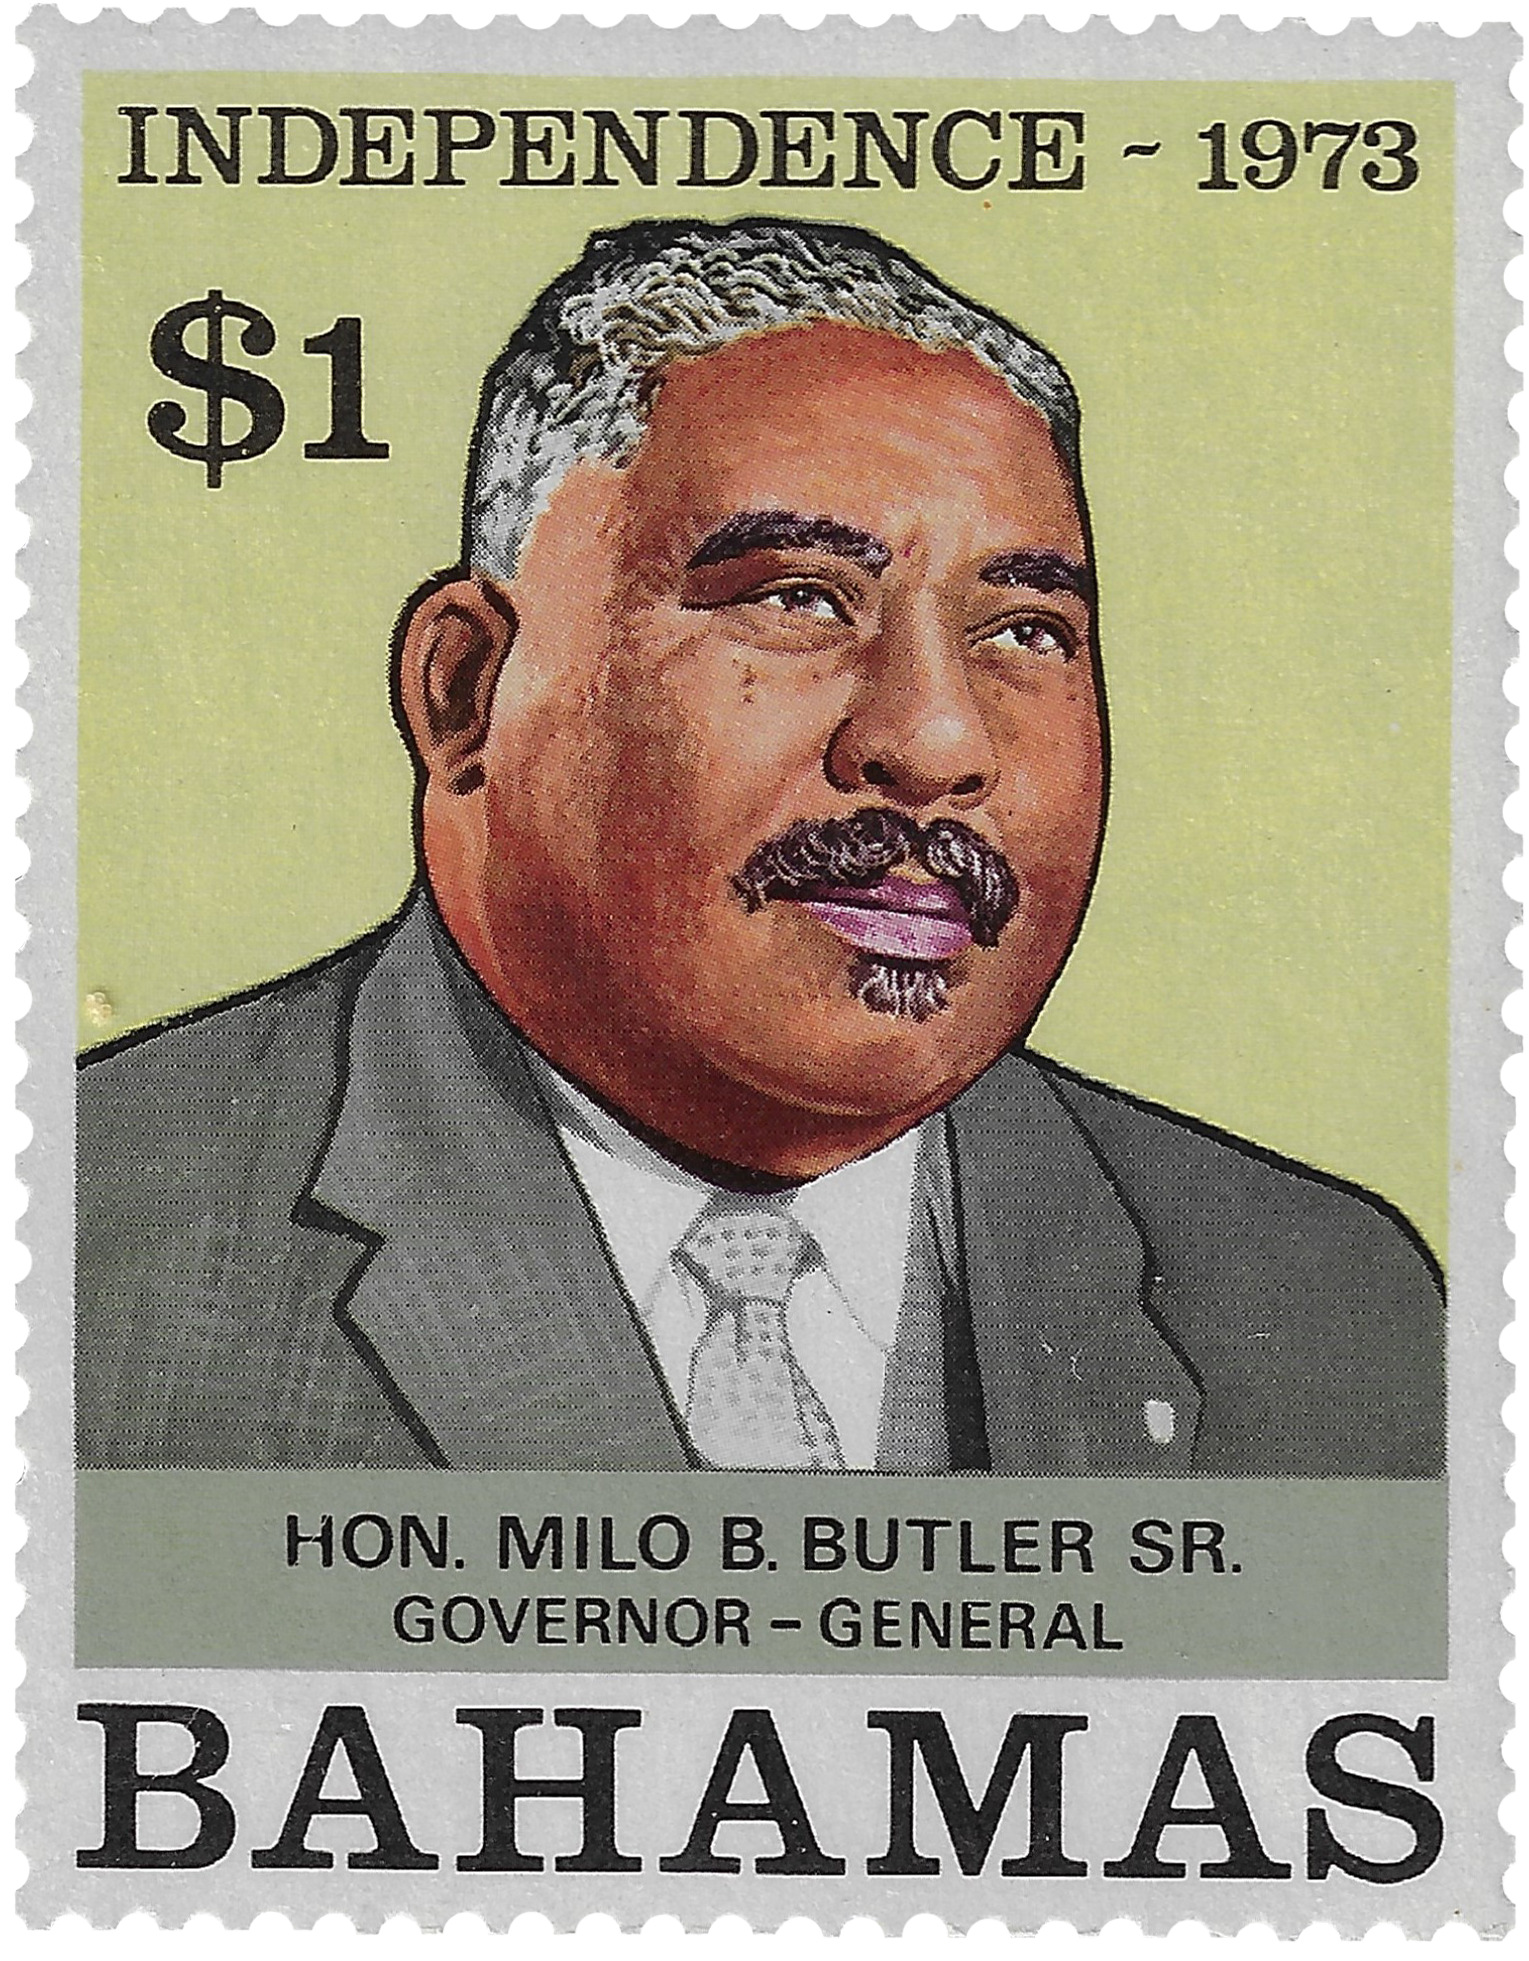 1d 1973, Independence, Hon. Milo B. Butler Sr., Governor - General